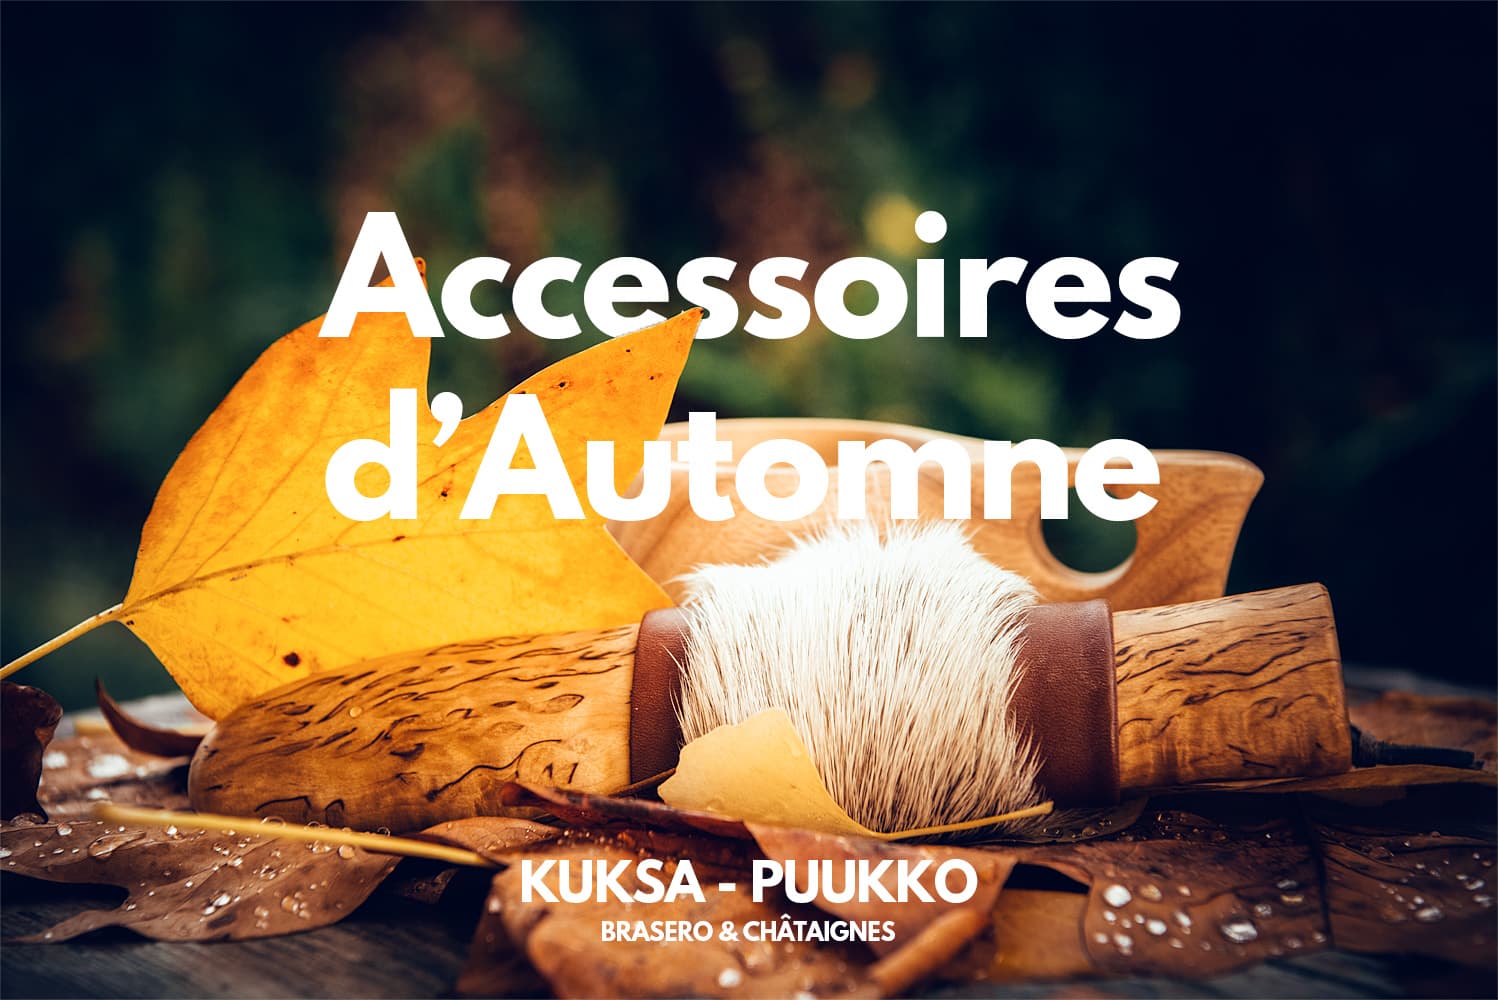 Kuksa et puukko, accessoires d'automne